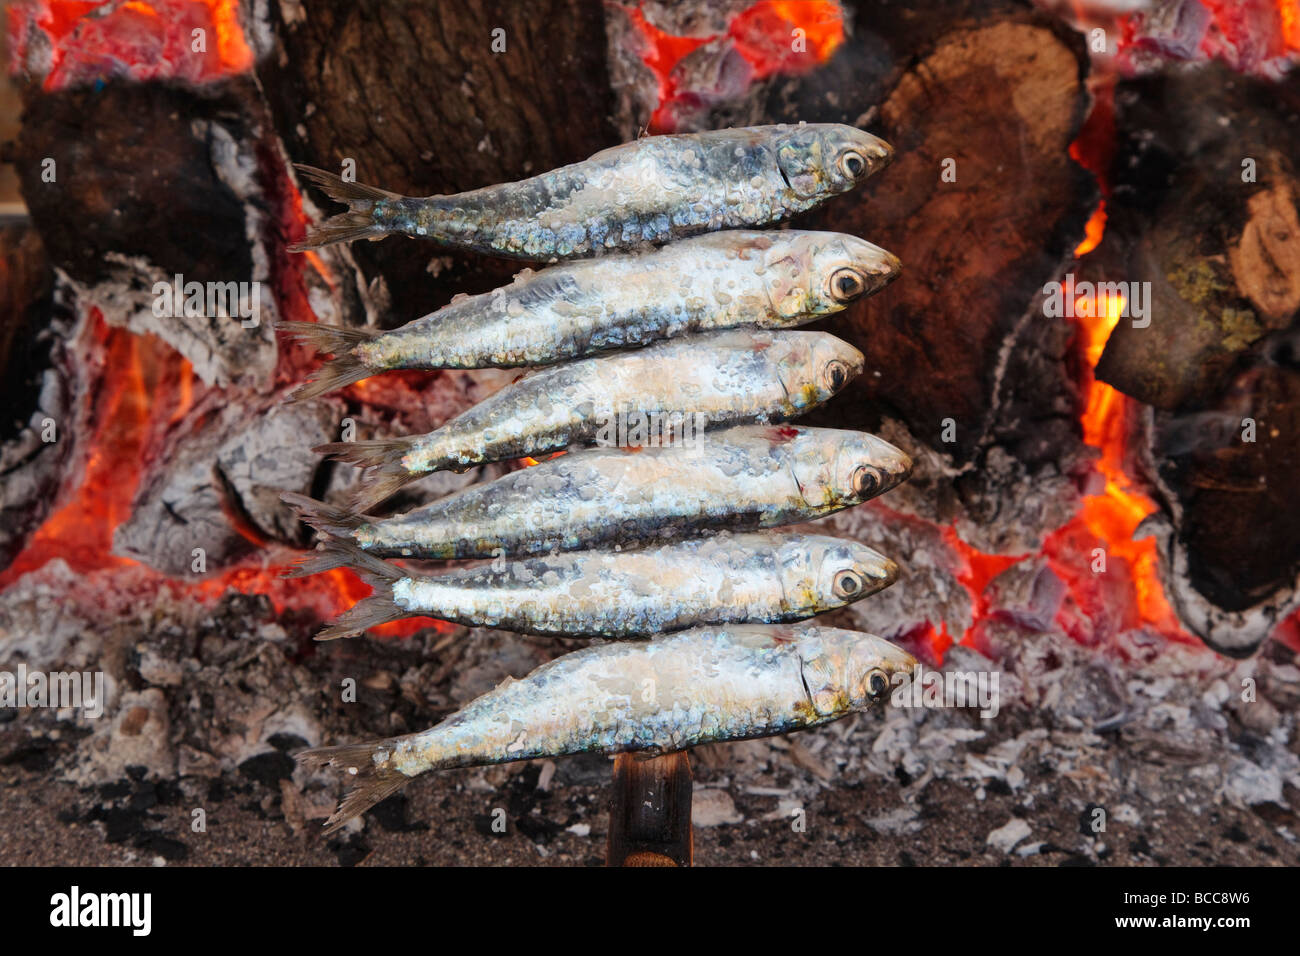 L'Espagne ou des brochettes de sardines espetos barbecueing sur feu ouvert Banque D'Images